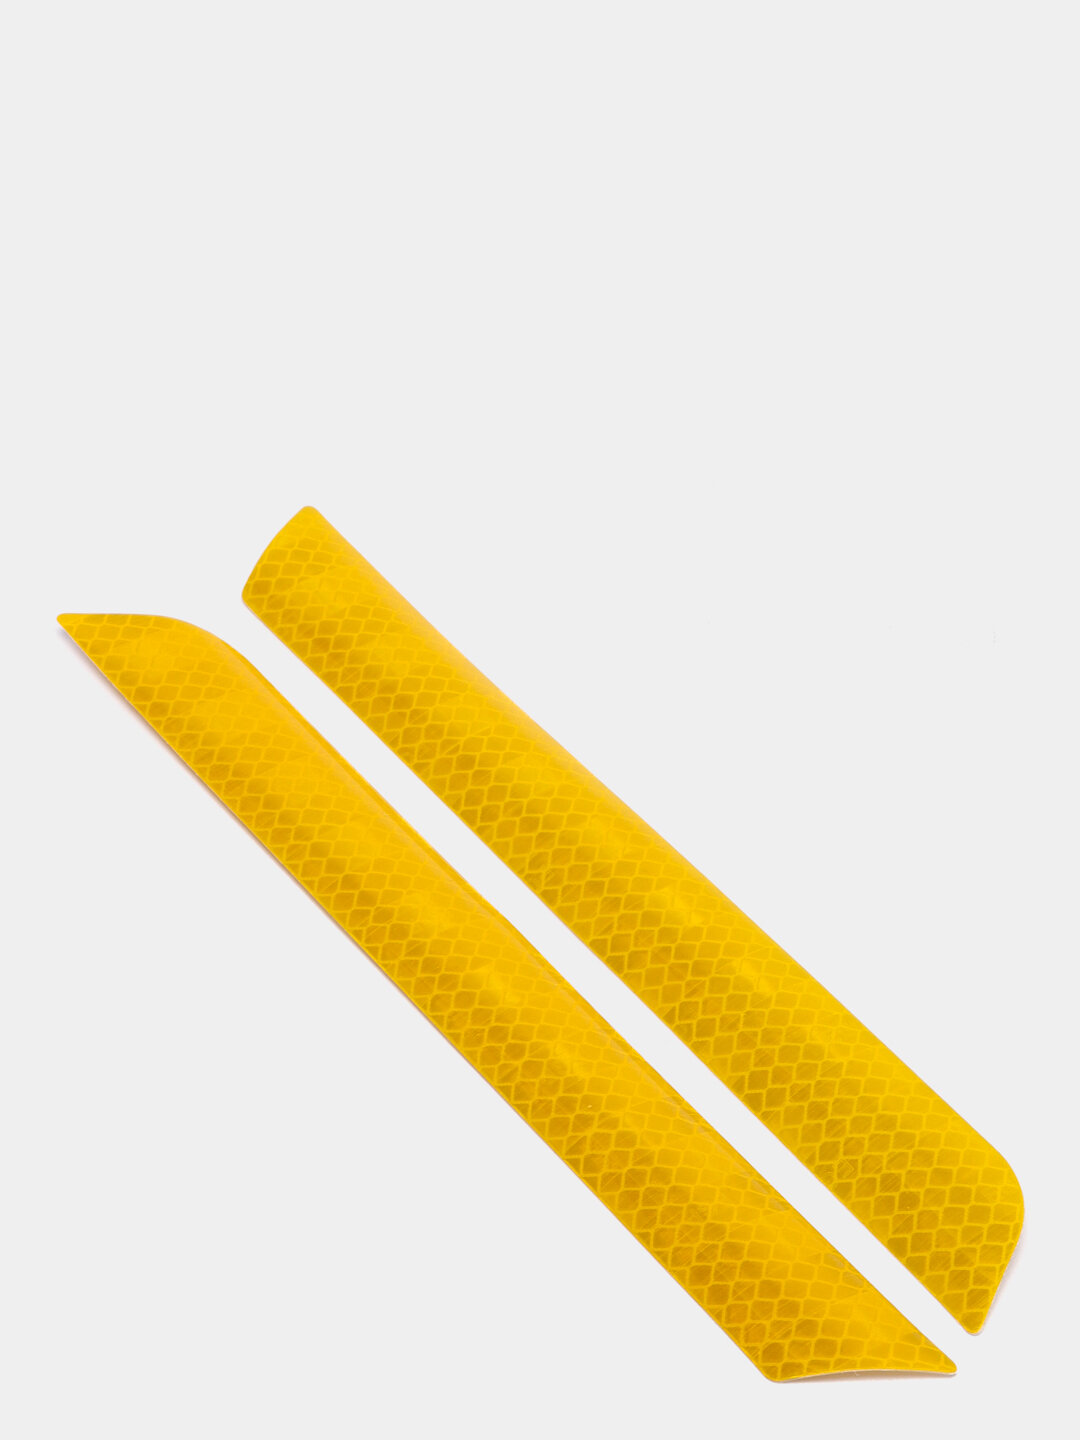 Наклейка светоотражающая на автомобиль, Наклейки для безопасности Цвет Желтый